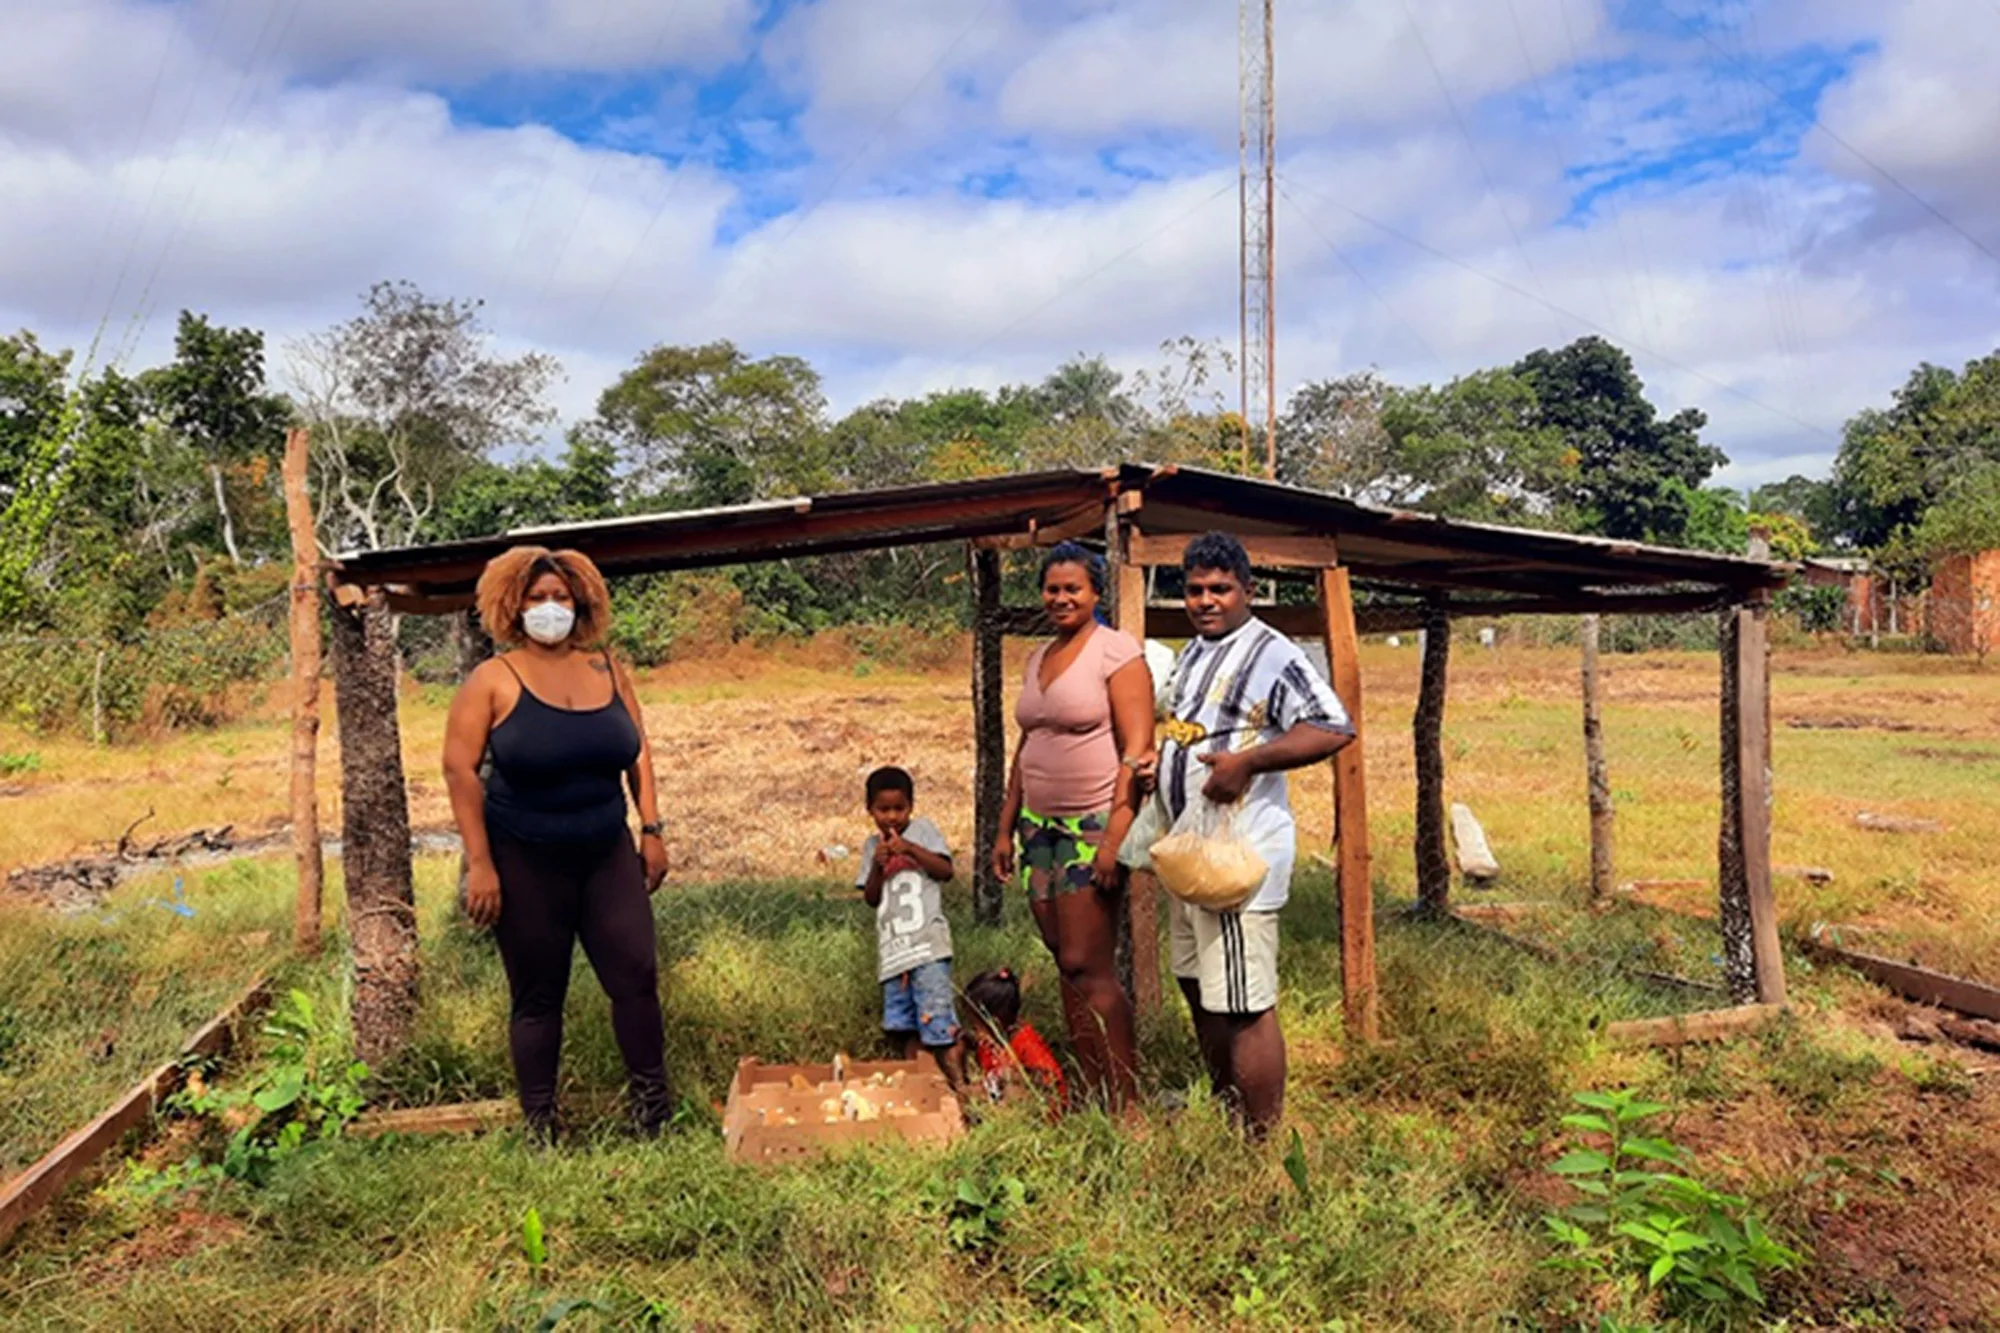 Técnicas tradicionais de cultivo são utilizadas por pequenos agricultores e comunidades quilombolas para produzir alimentos sem prejudicar a natureza. — Foto: Acervo pessoal.